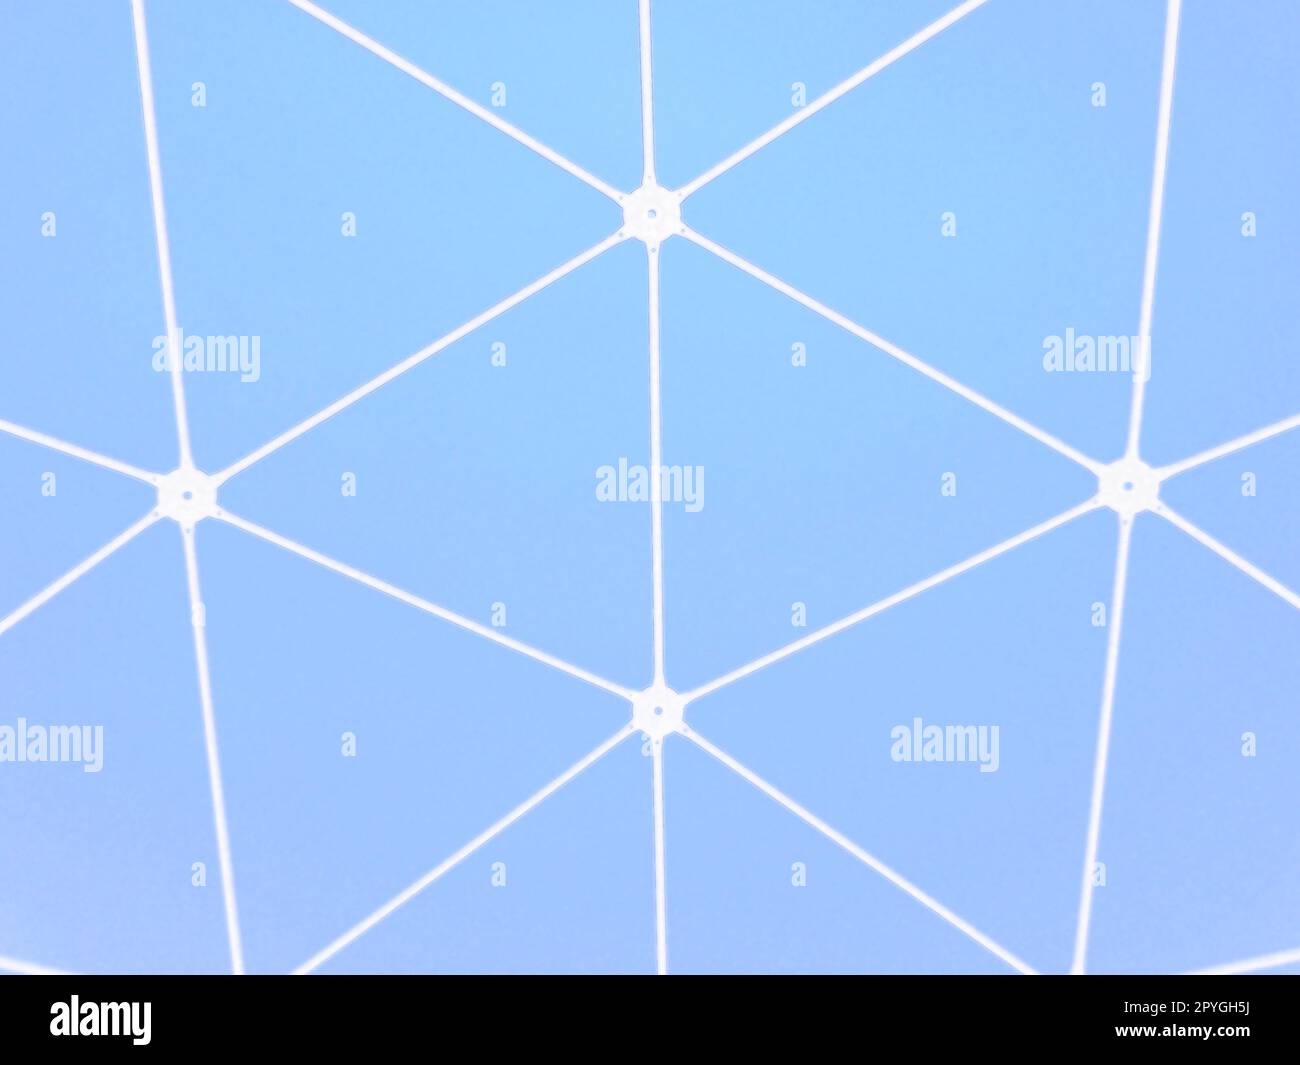 Blockchain-Netzwerk und Internet. Weiße Linien und verbundene Punkte auf blauem Hintergrund. Chemische Struktur eines Moleküls oder einer Substanz. Körperliche Verfassung. Interaktionskonzept. Abstraktes Muster Stockfoto